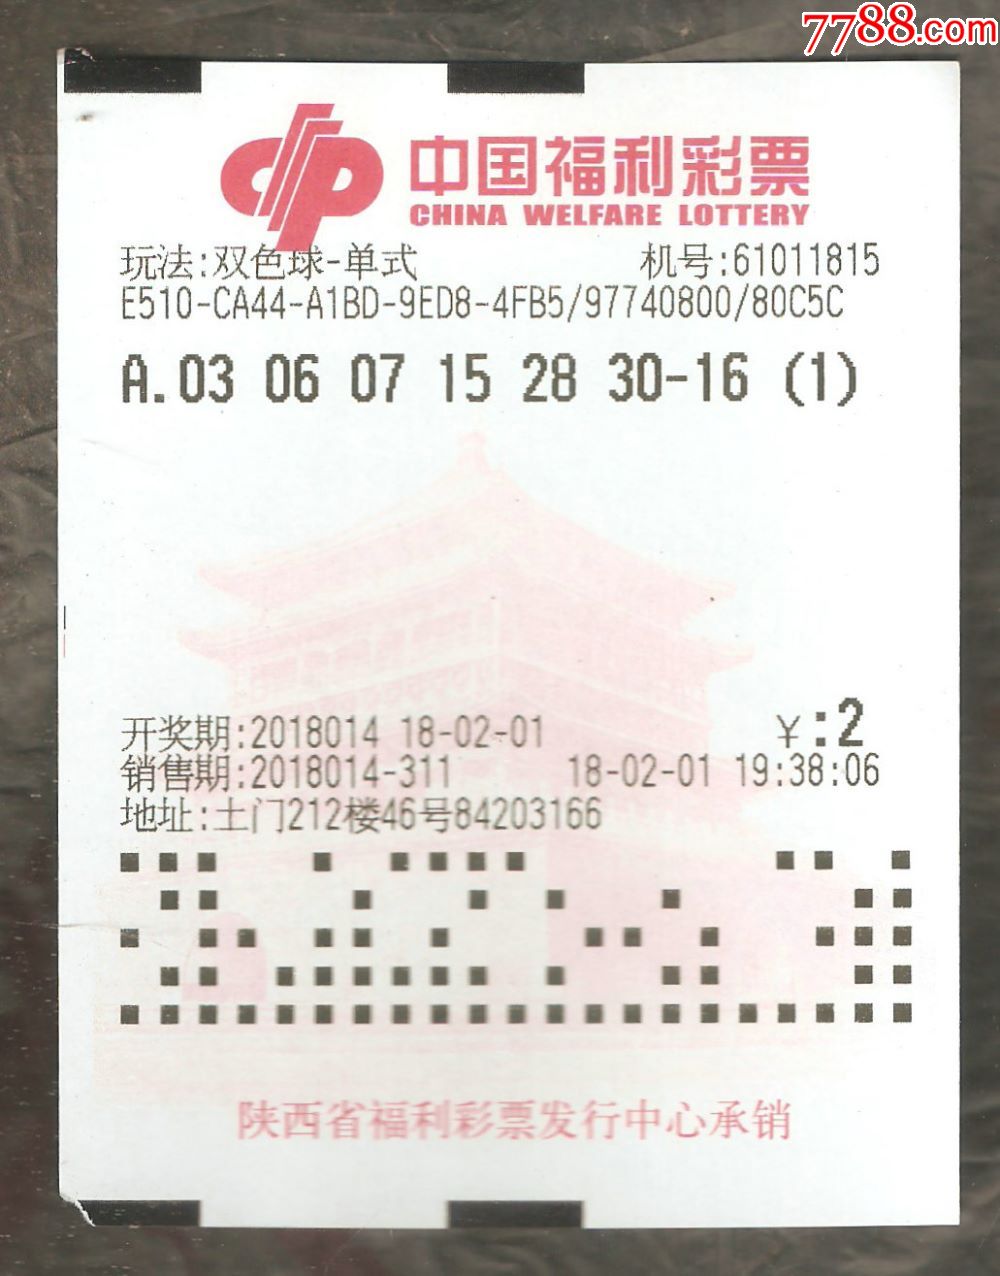 中国福利彩票--福利彩票公益金(背面钟楼水印)